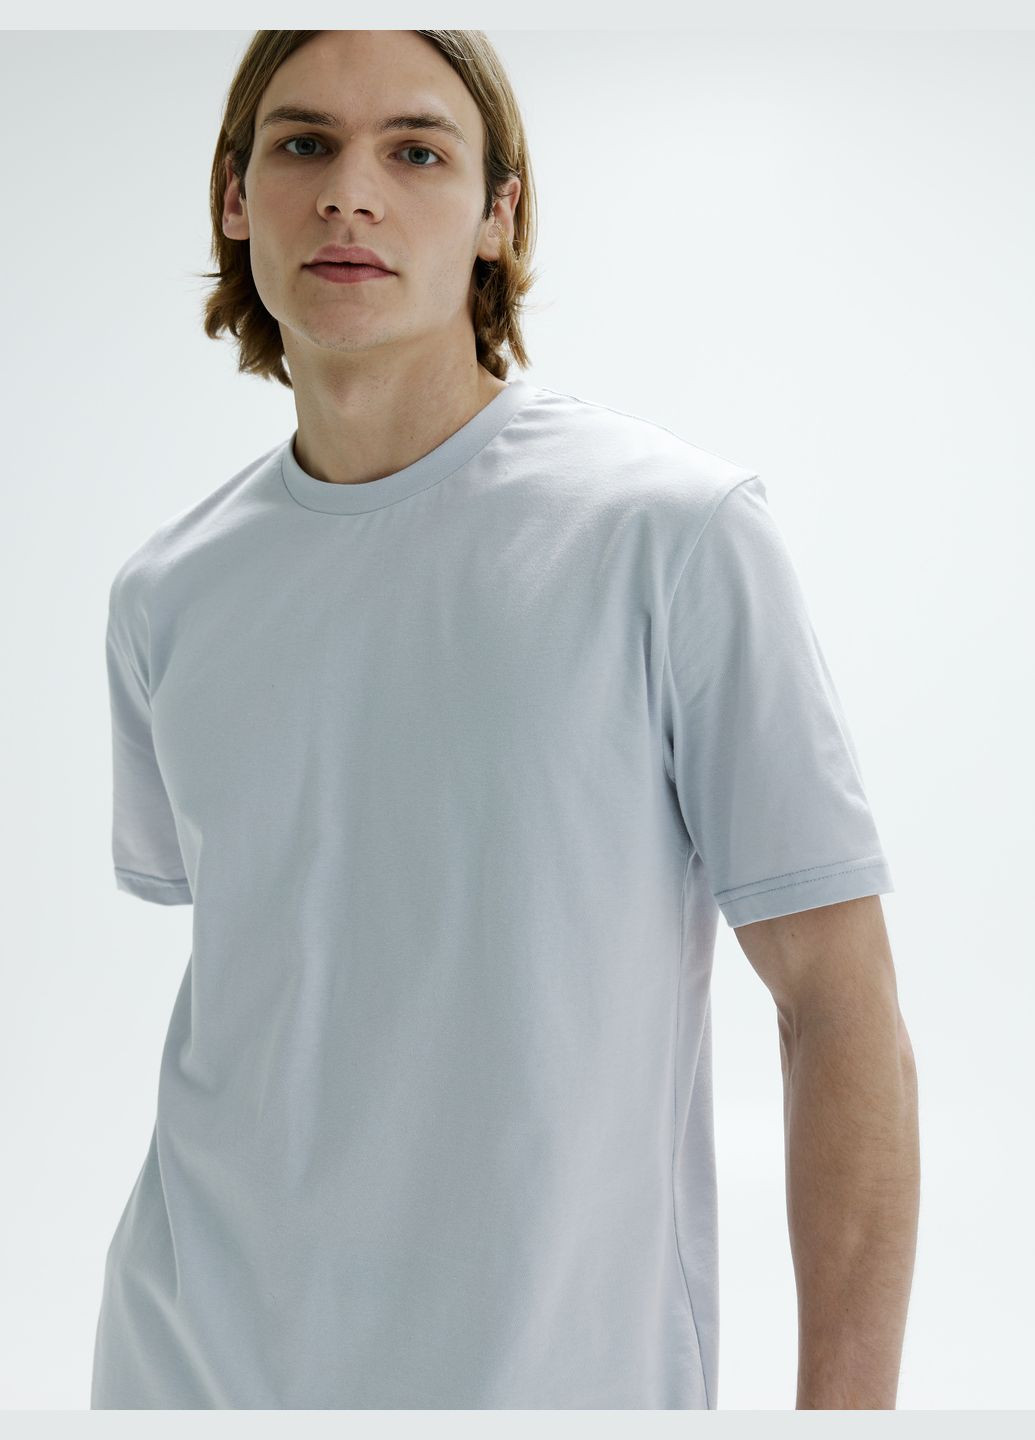 Світло-сіра футболка для чоловіків з коротким рукавом Роза